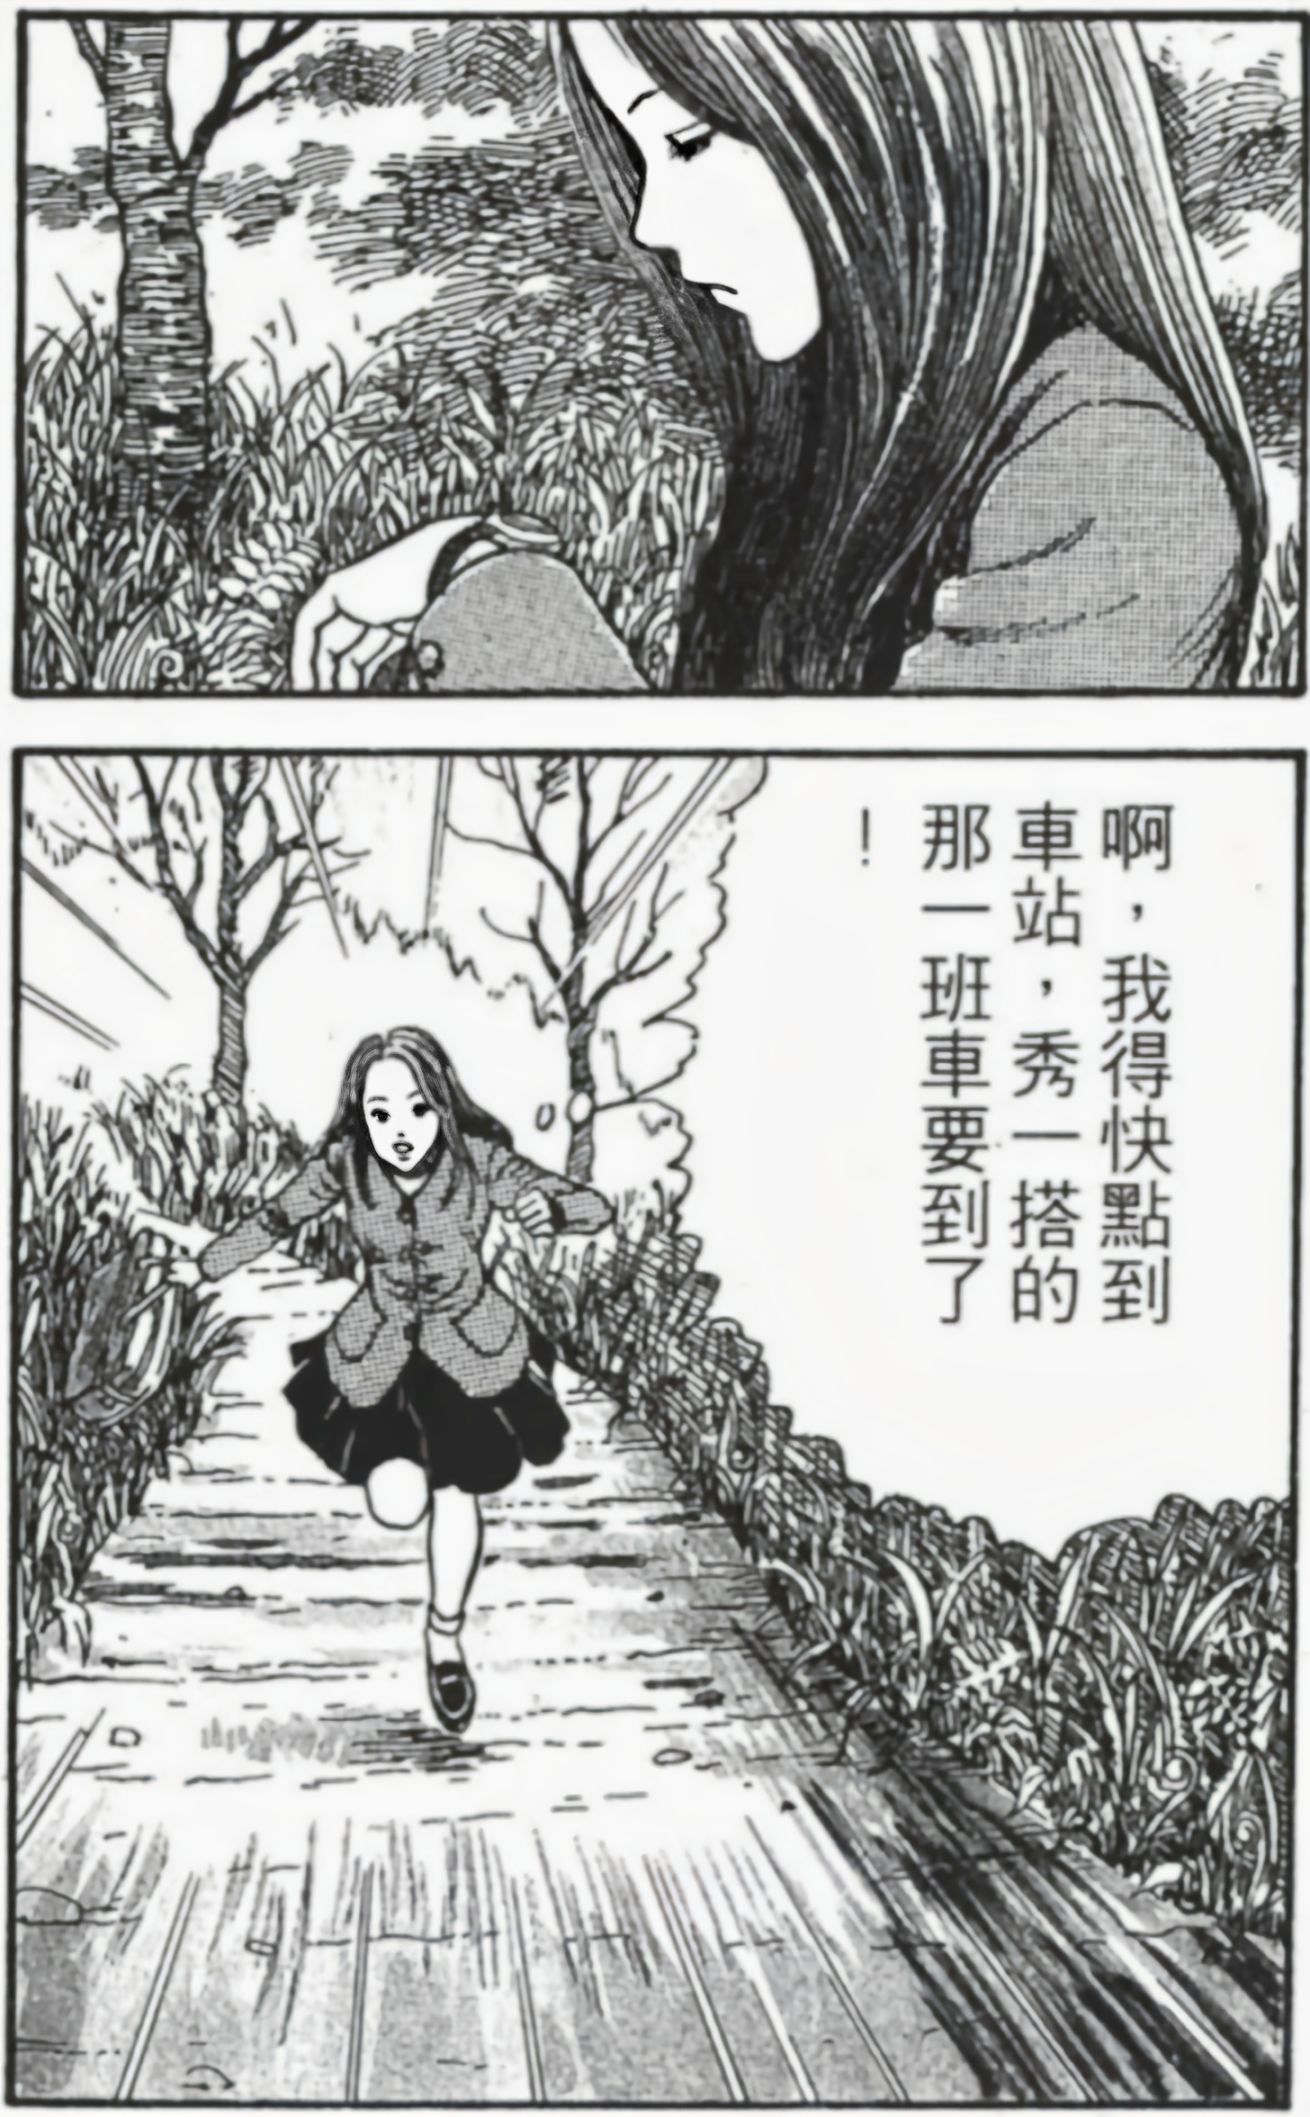 【影視動漫】伊藤潤二的頂級恐怖漫畫《漩渦》-第5張